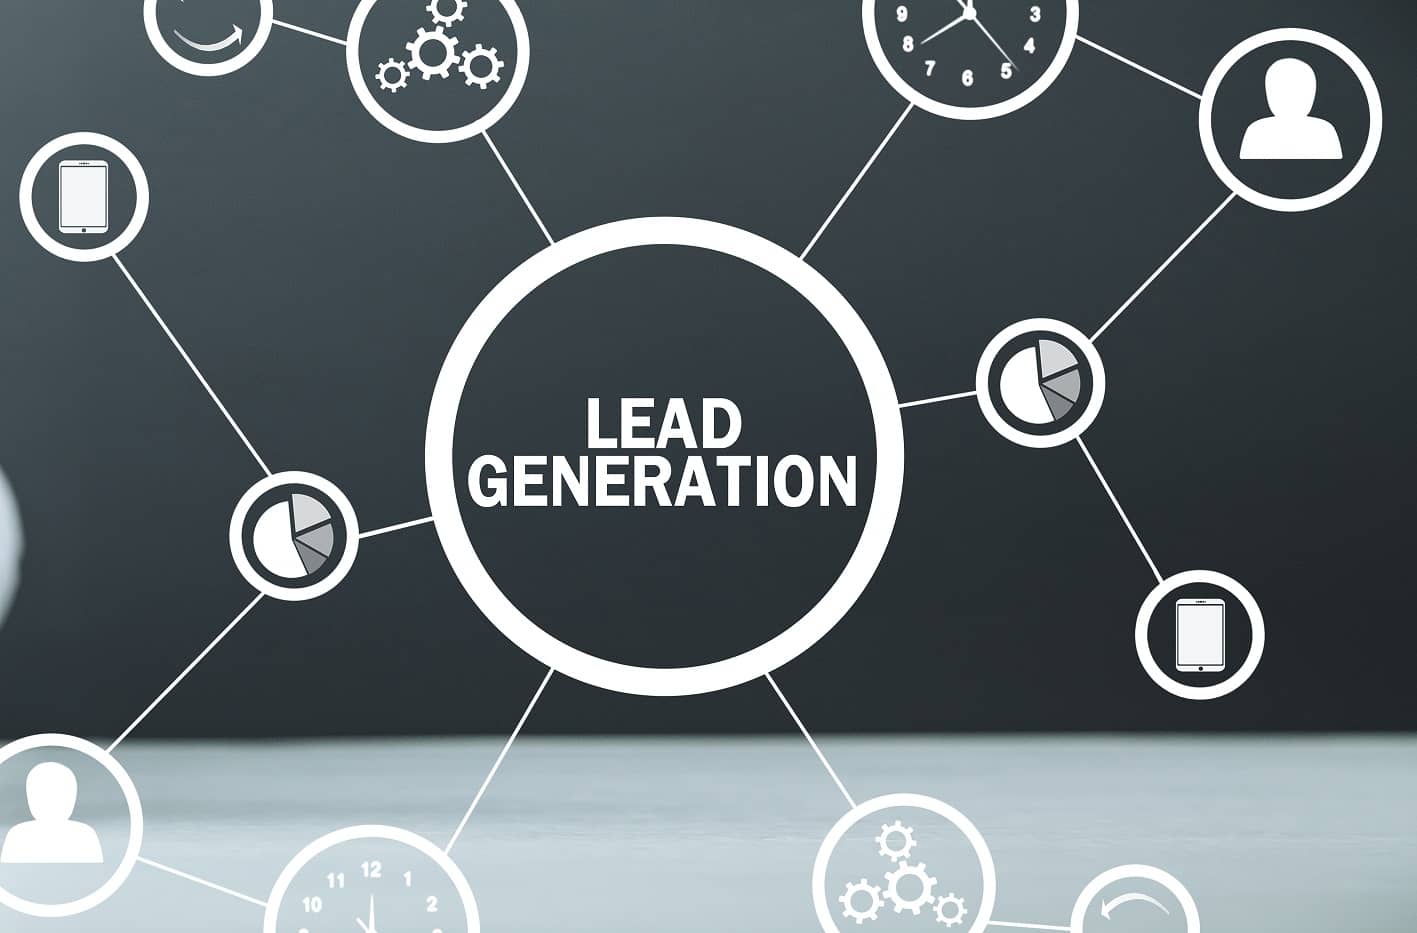 Lead generation ideas